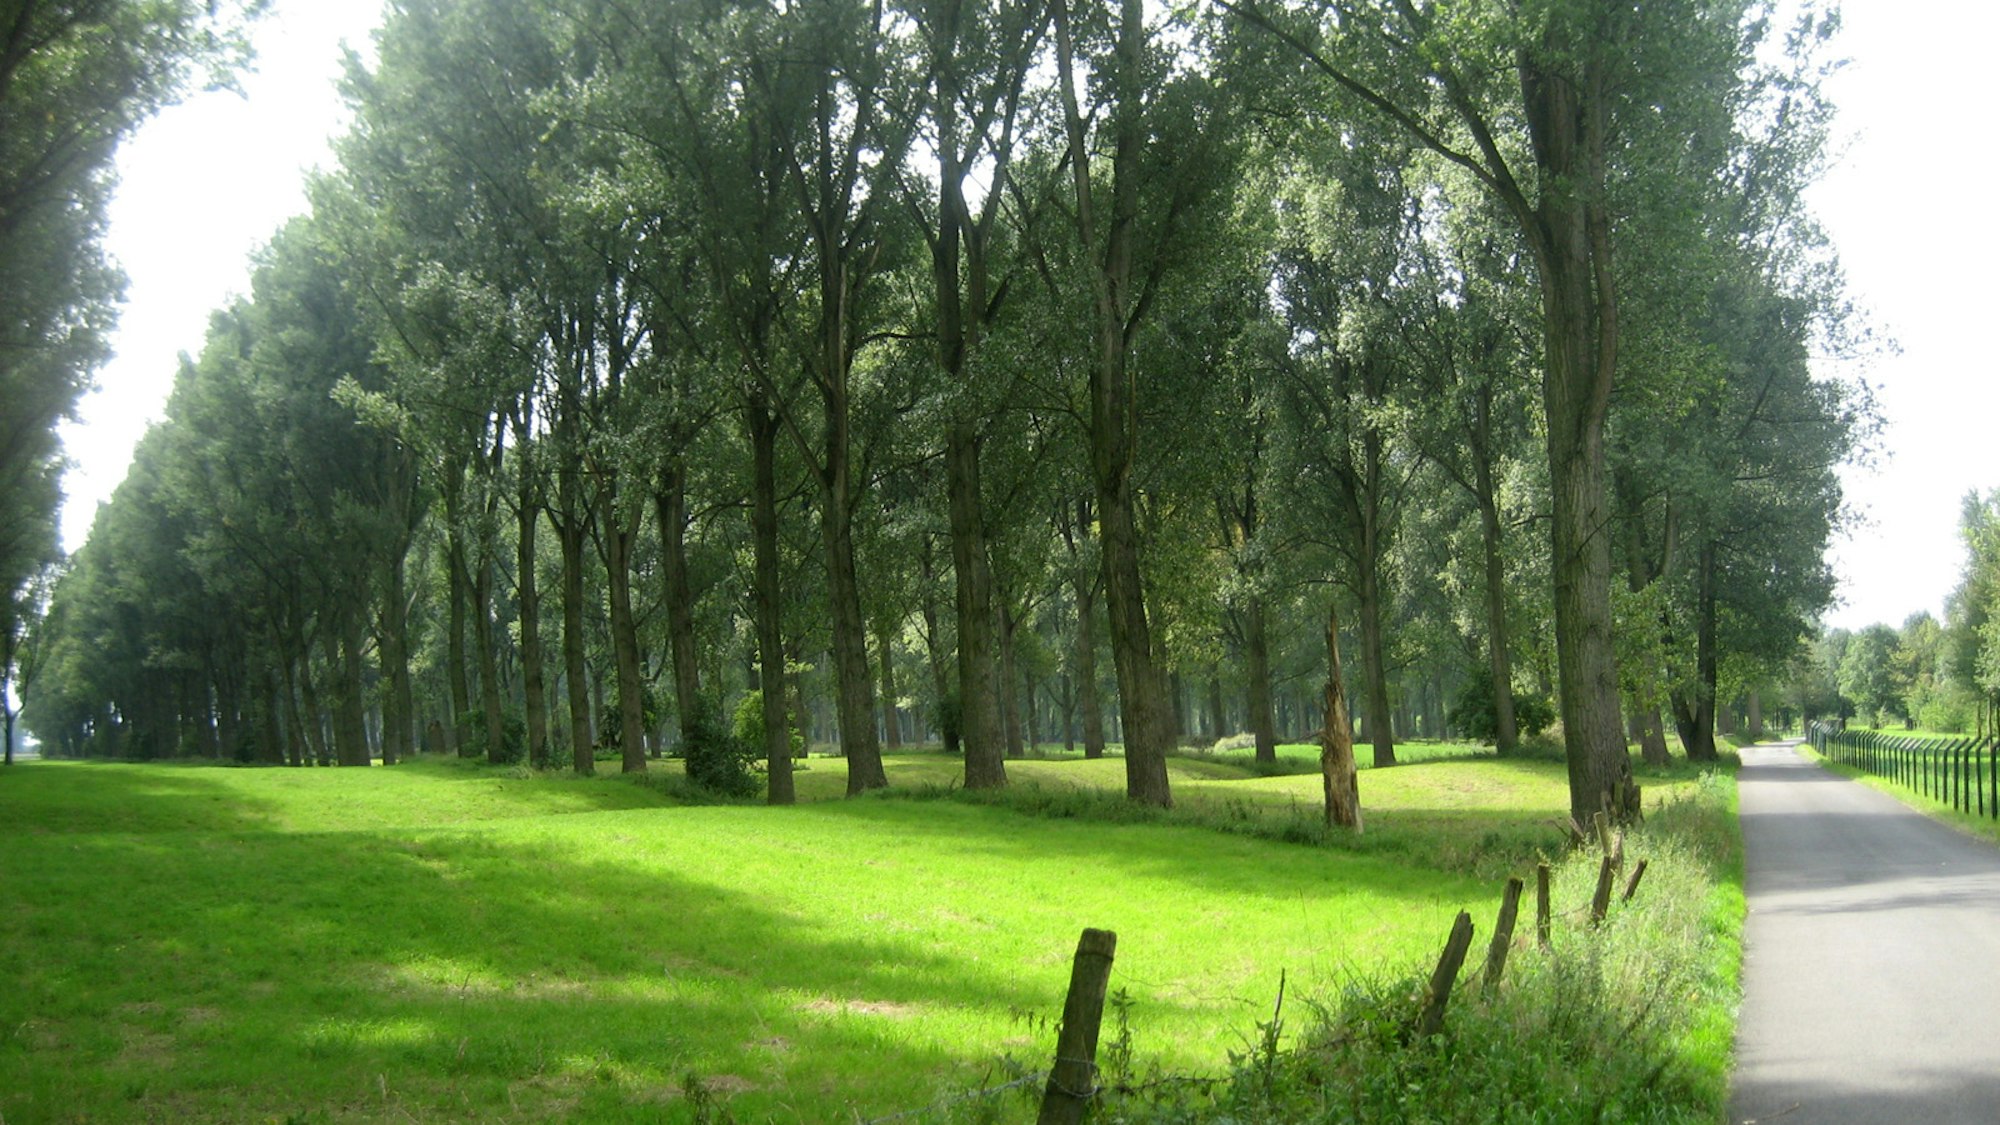 Nadelwald und eine grüne Wiese im Vordergrund, rechts ein asphaltierter Weg